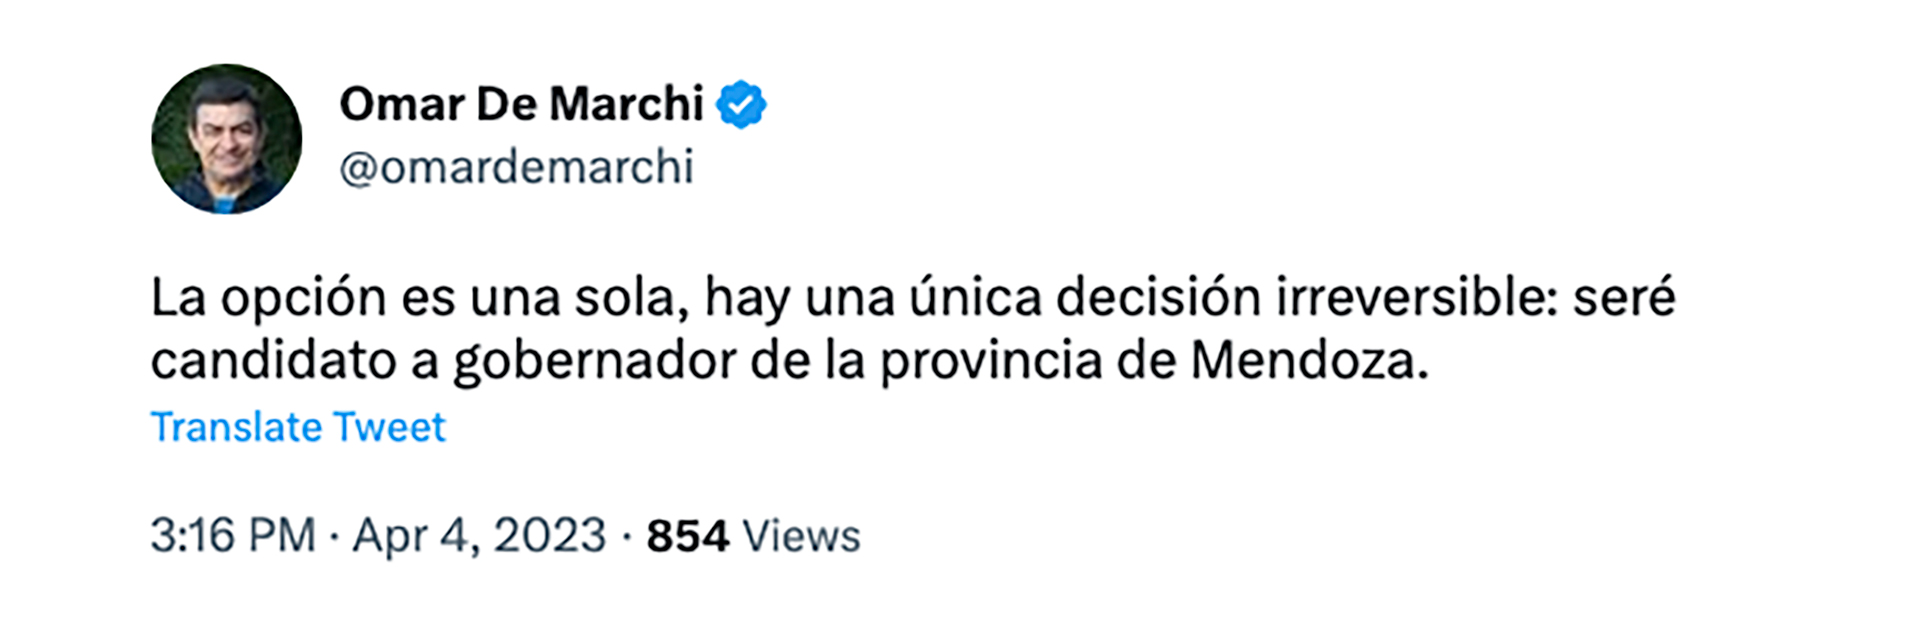 El tuit de Omar De Marchi para anunciar que será candidato a gobernador de Mendoza